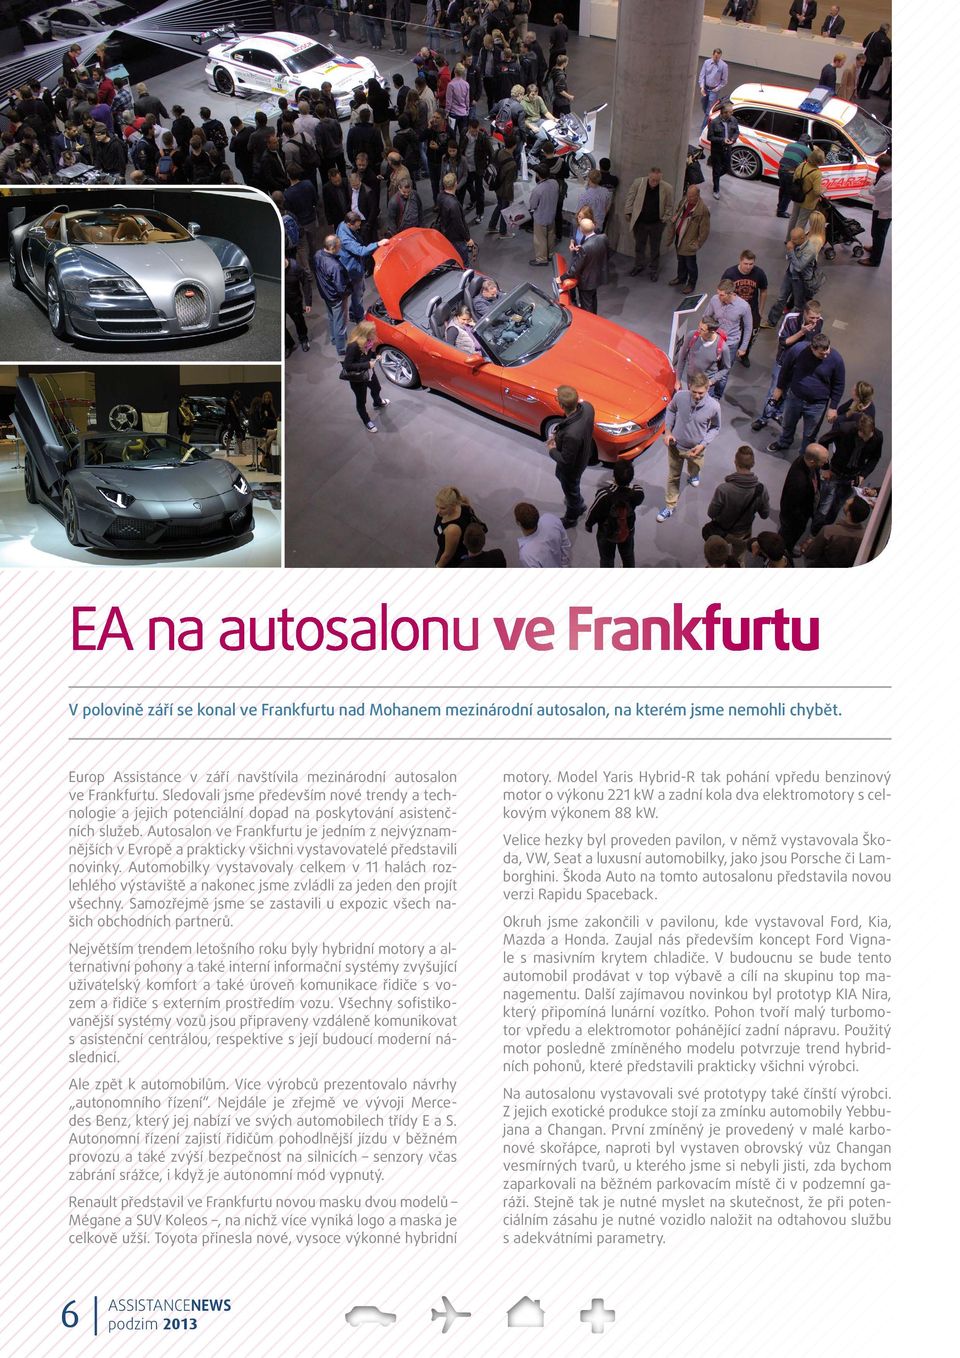 Autosalon ve Frankfurtu je jedním z nejvýznamnějších v Evropě a prakticky všichni vystavovatelé představili novinky.